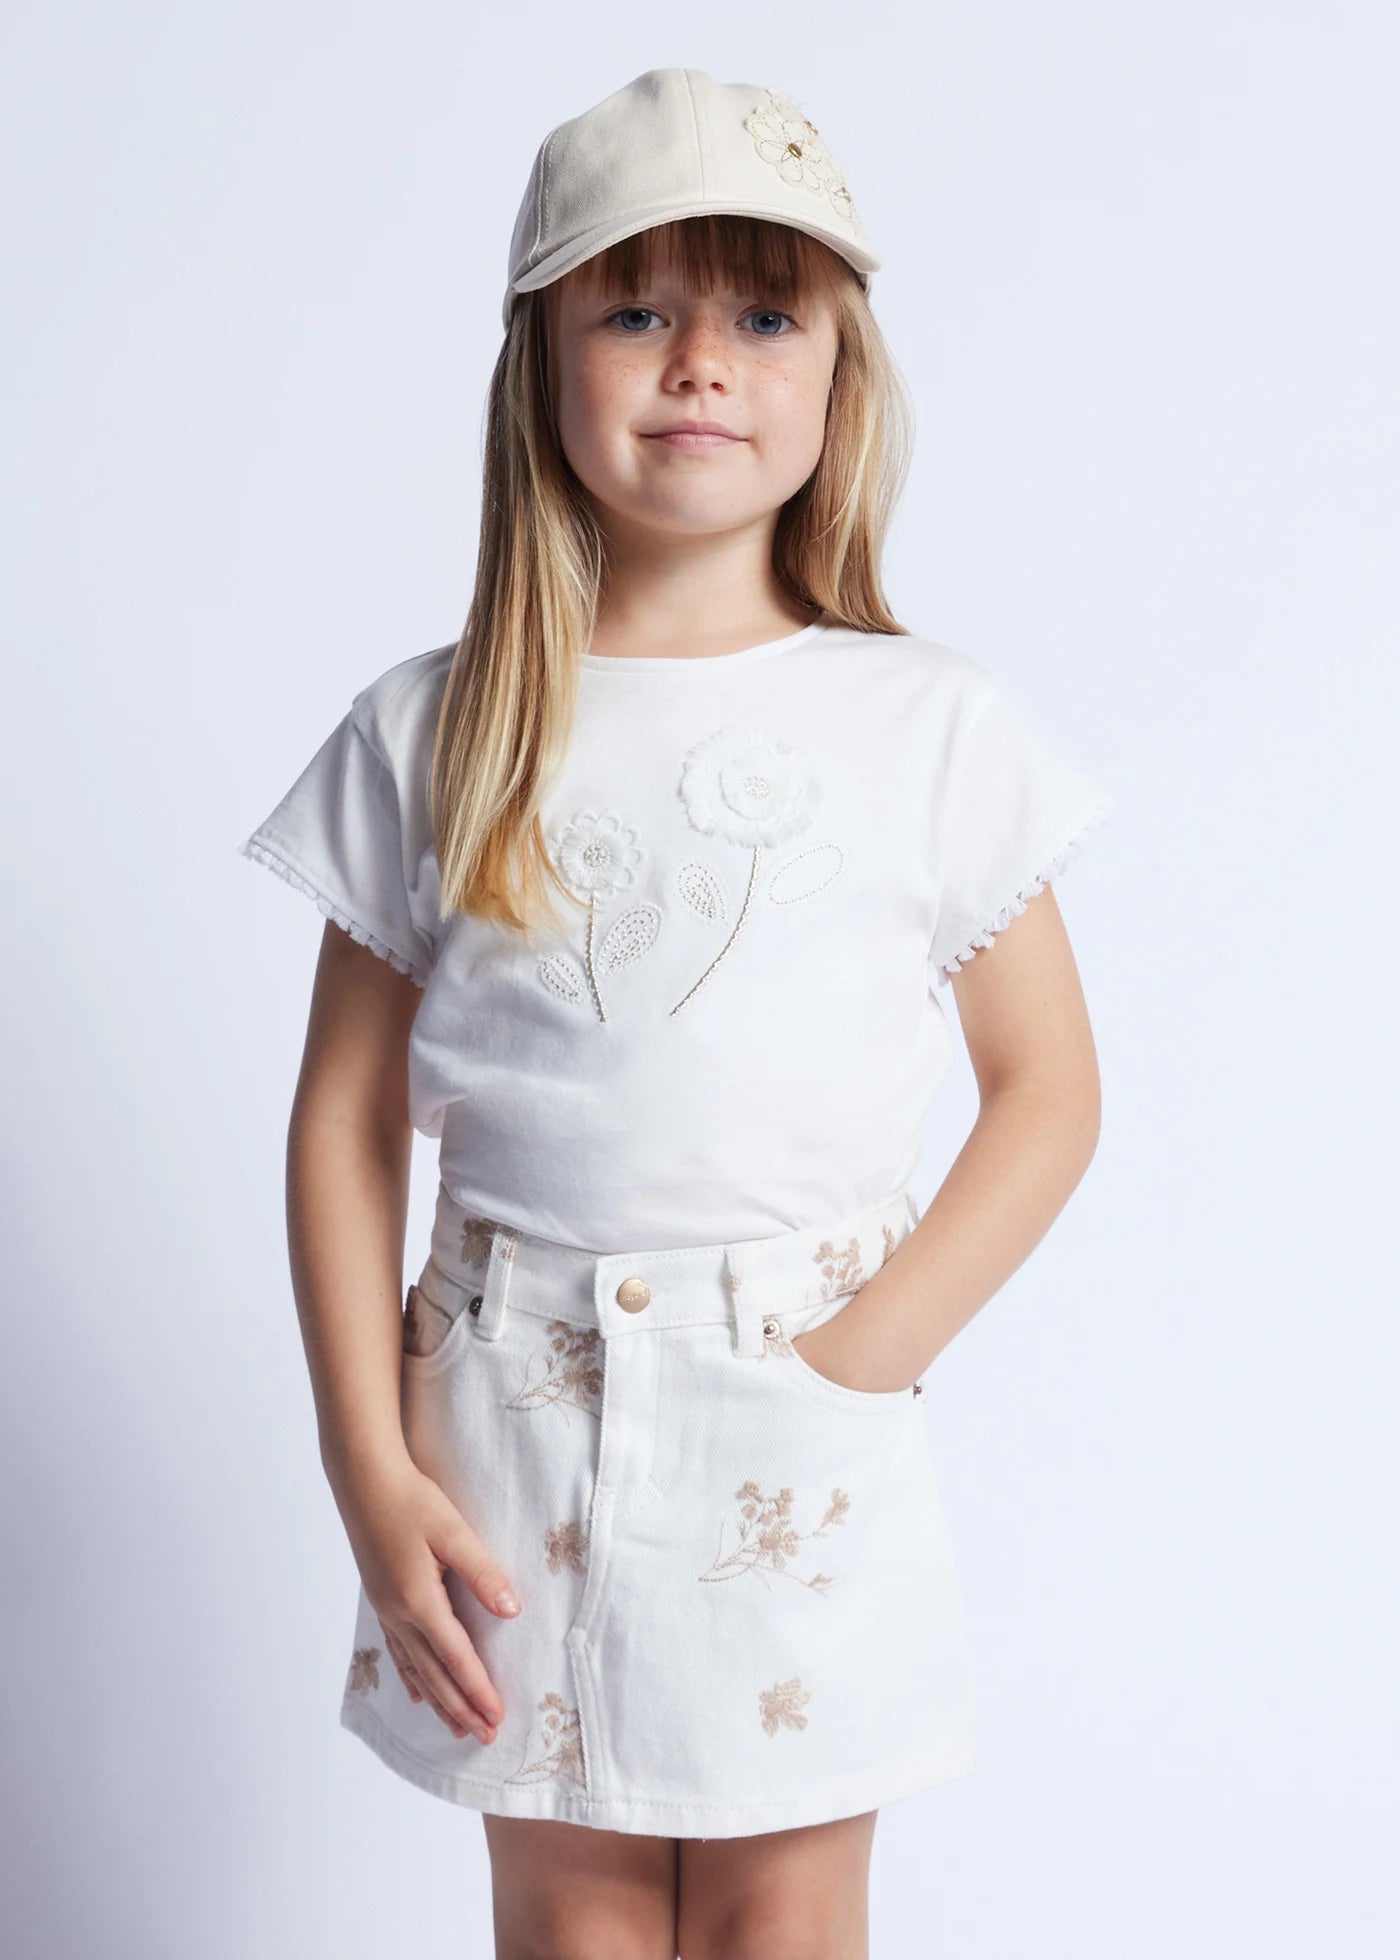 White jeans skirt for kid girl